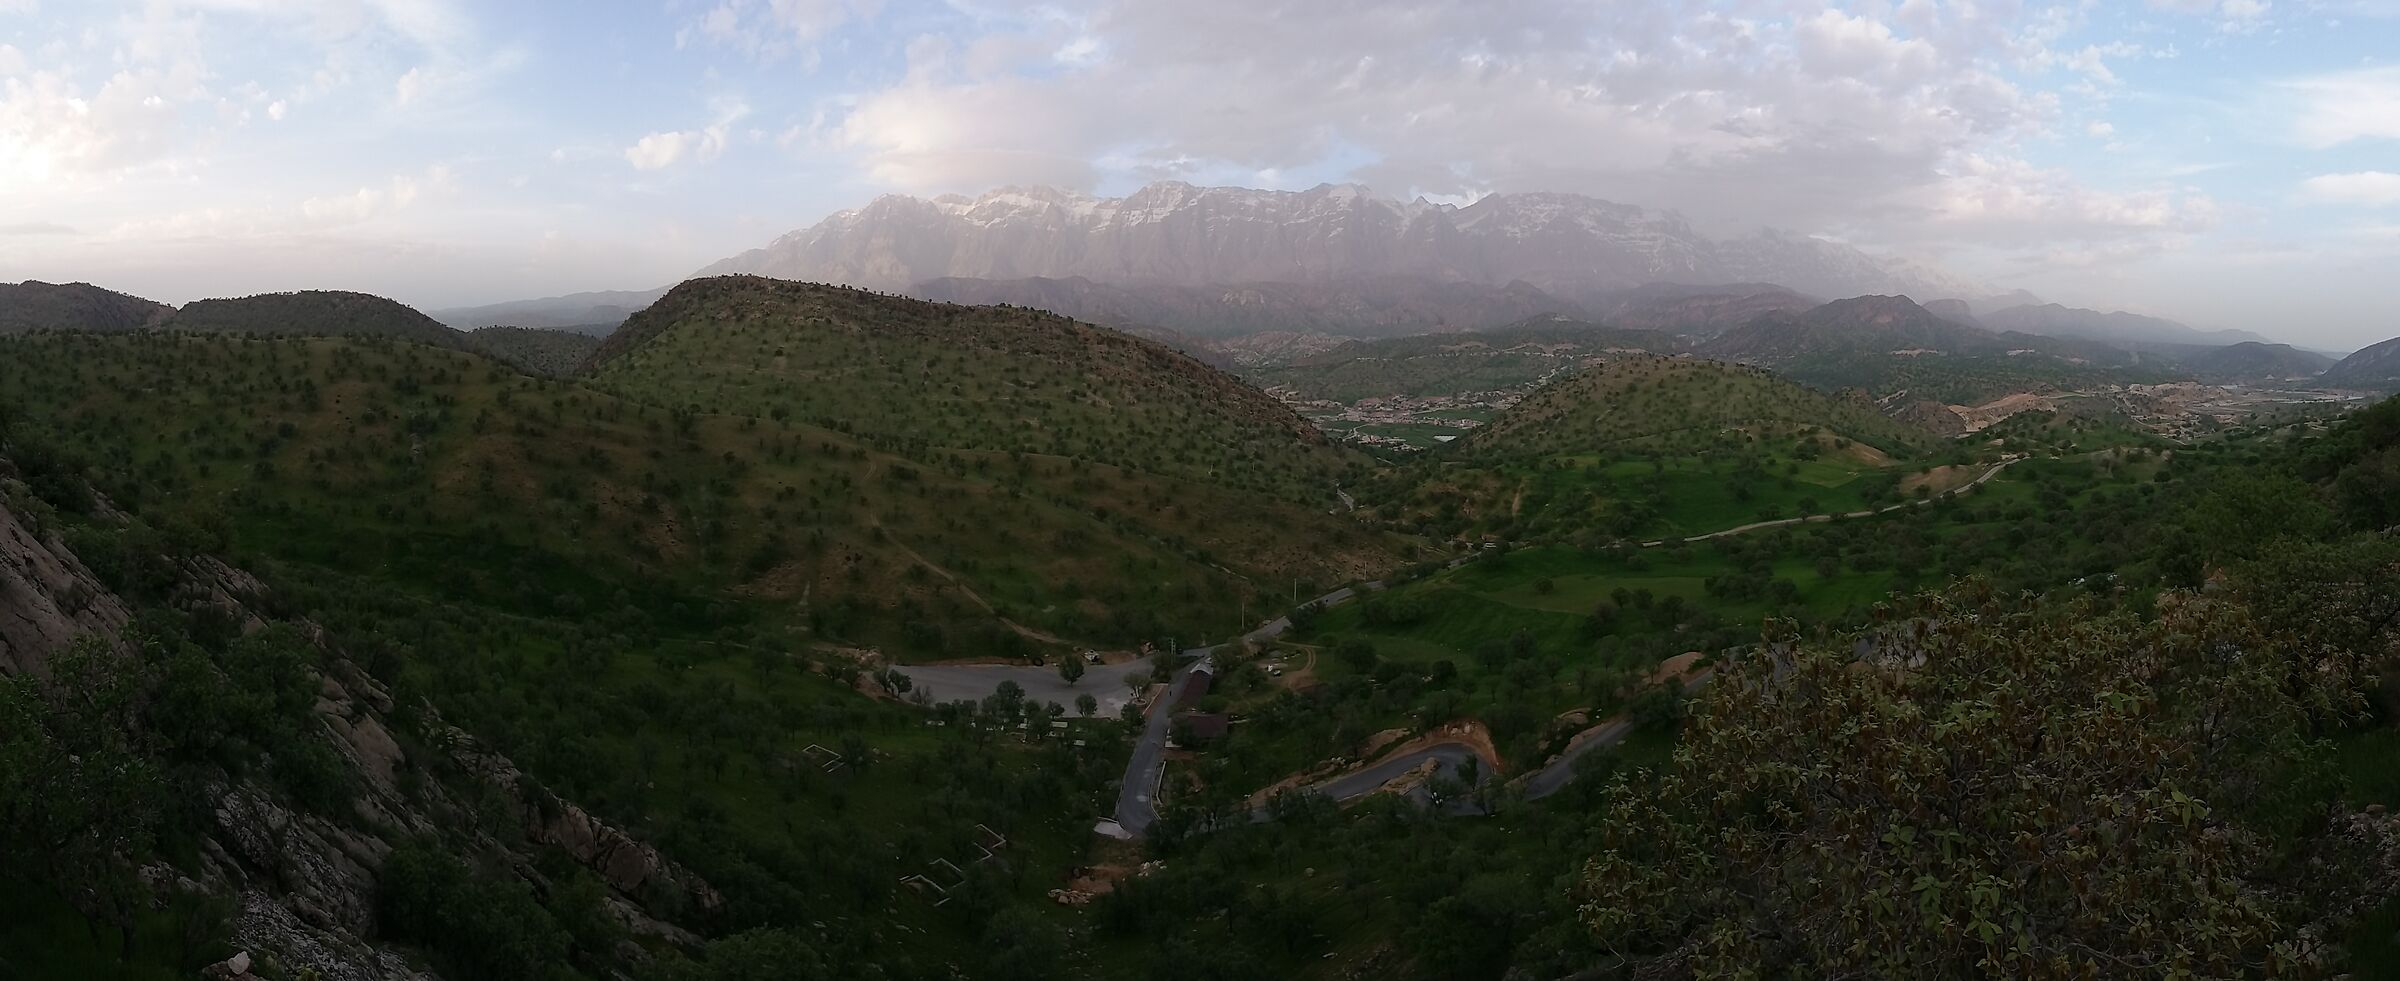 DehShikh village mountain,Pataveh, Lorestan, Iran...